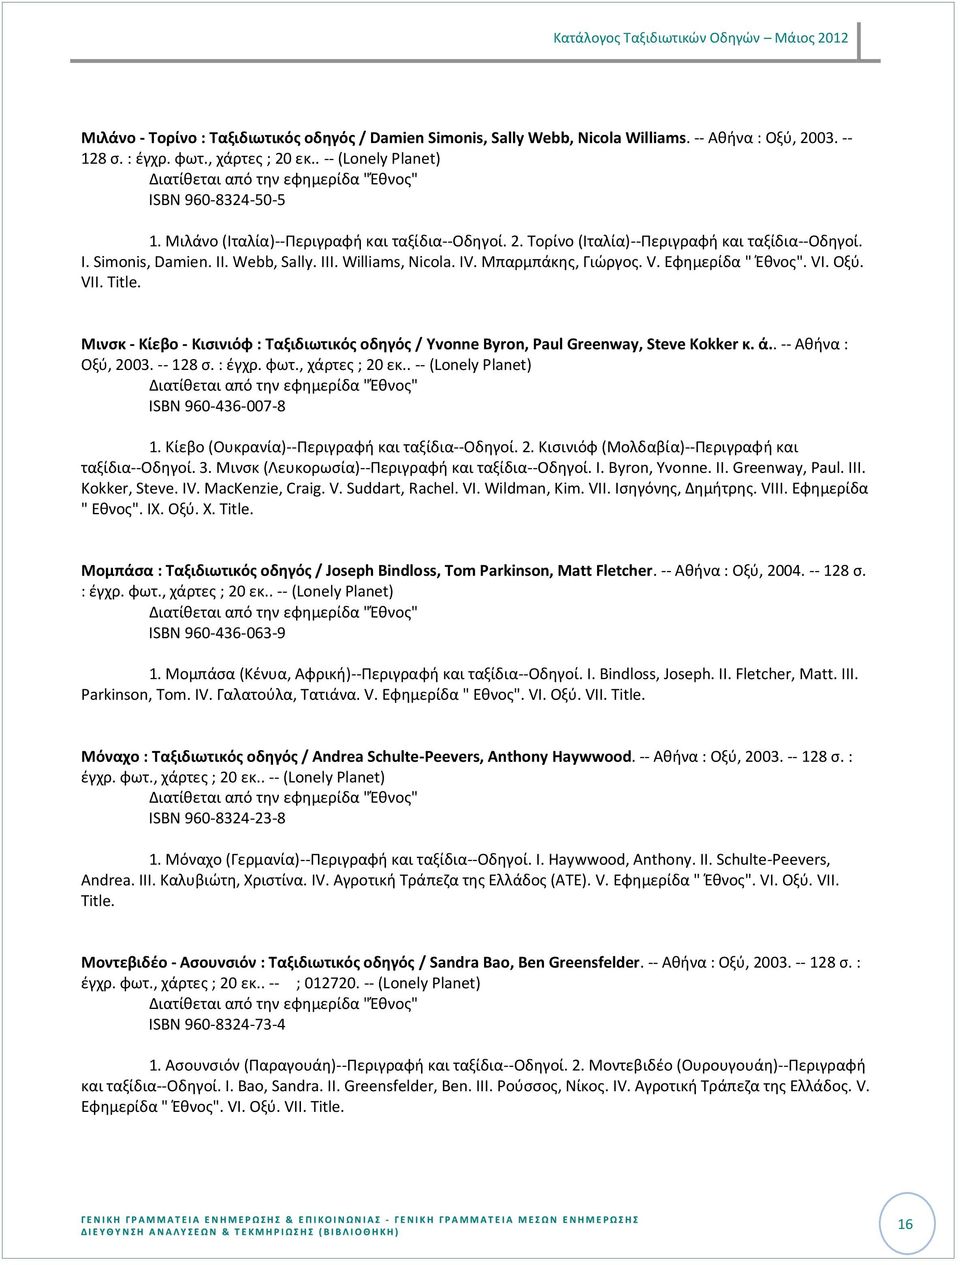 Μινςκ - Κίεβο - Κιςινιόφ : Ταξιδιωτικόσ οδθγόσ / Yvonne Byron, Paul Greenway, Steve Kokker κ. ά.. -- Ακινα : Οξφ, 2003. -- 128 ς. : ζγχρ. φωτ., ISBN 960-436-007-8 1.